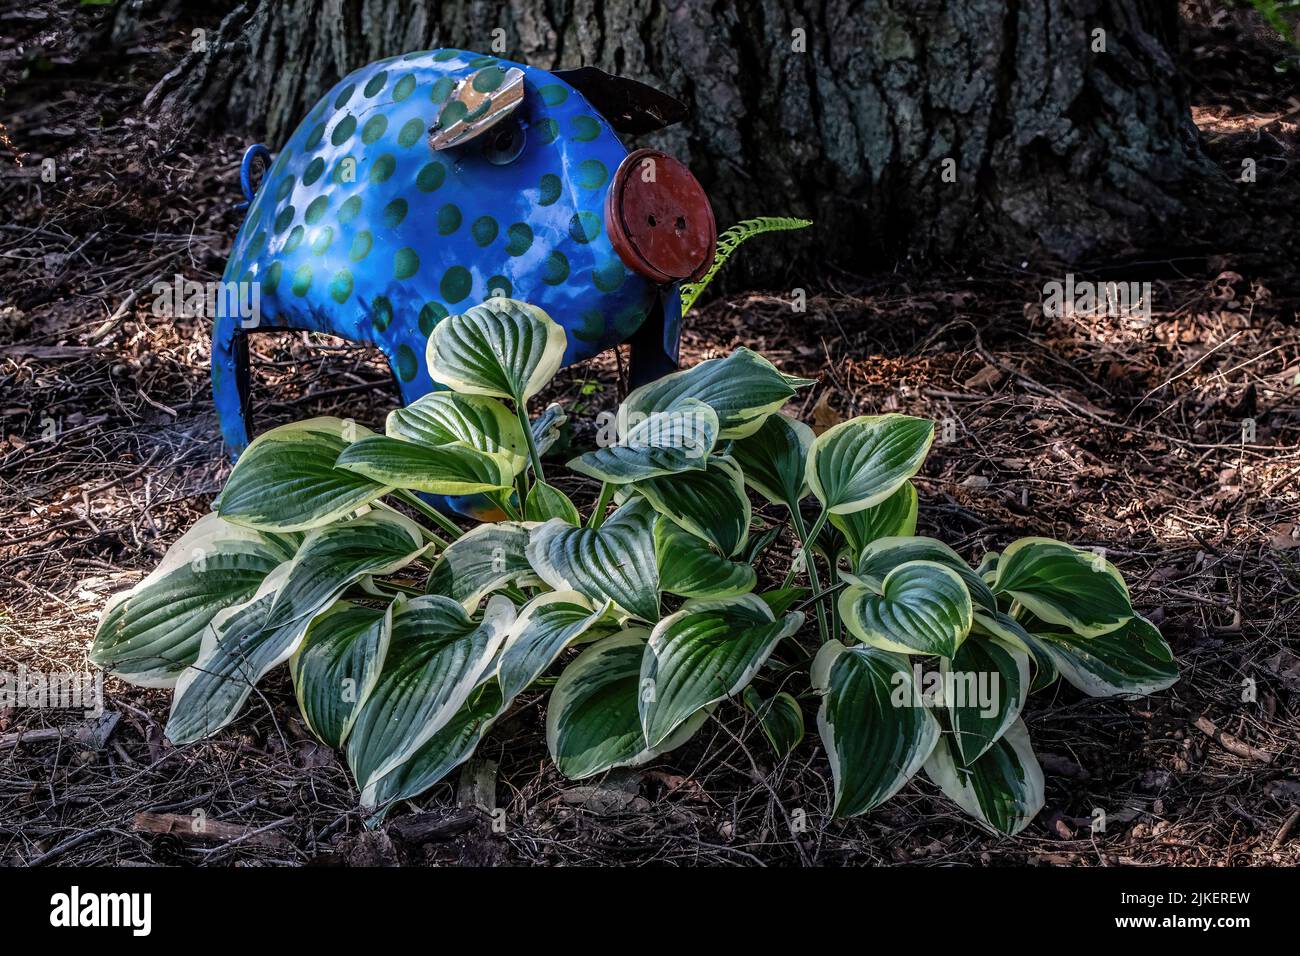 Blaue Polka gepunktet Zinn Schwein Rasen Ornament hinter einigen schönen Hostas in einem Sommergarten. Stockfoto